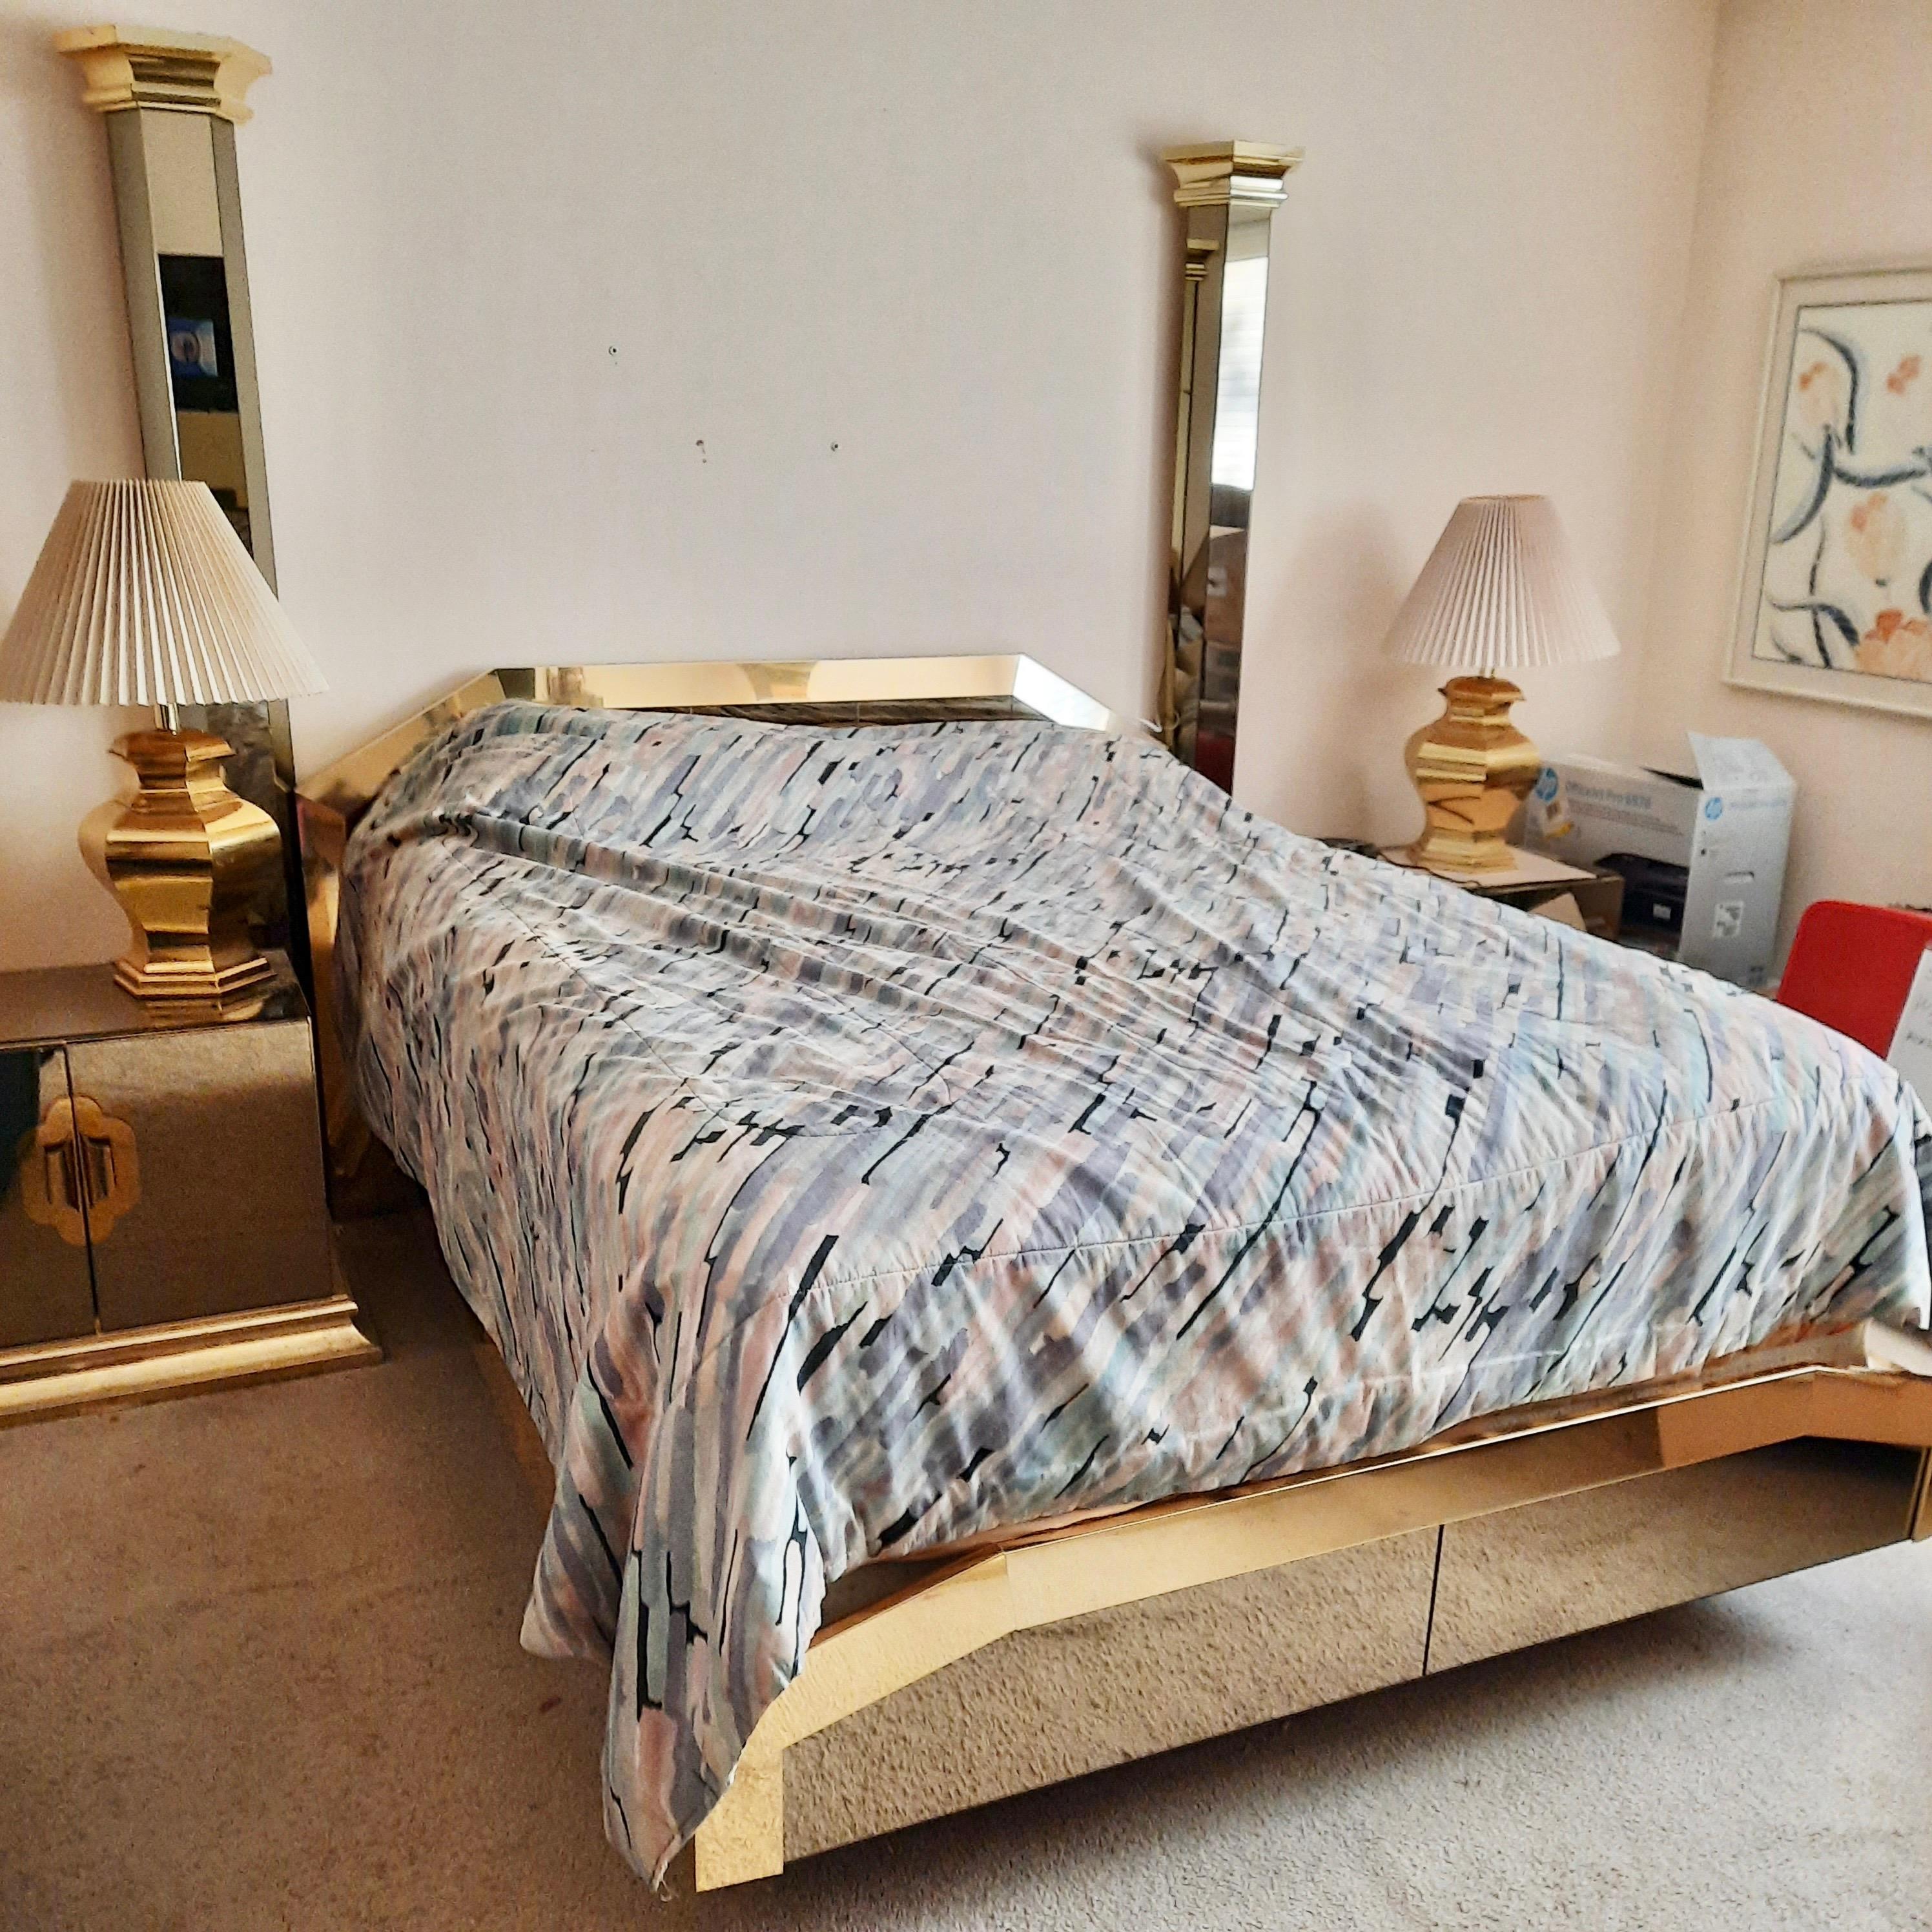 Umwerfendes, schwebendes Queen-Size-Bett mit zwei Postern, verkleidet mit poliertem Messing und bronziertem Spiegelglas, entworfen von O. B. Solie für Ello Furniture Manufacturing Co. aus der Kollektion 